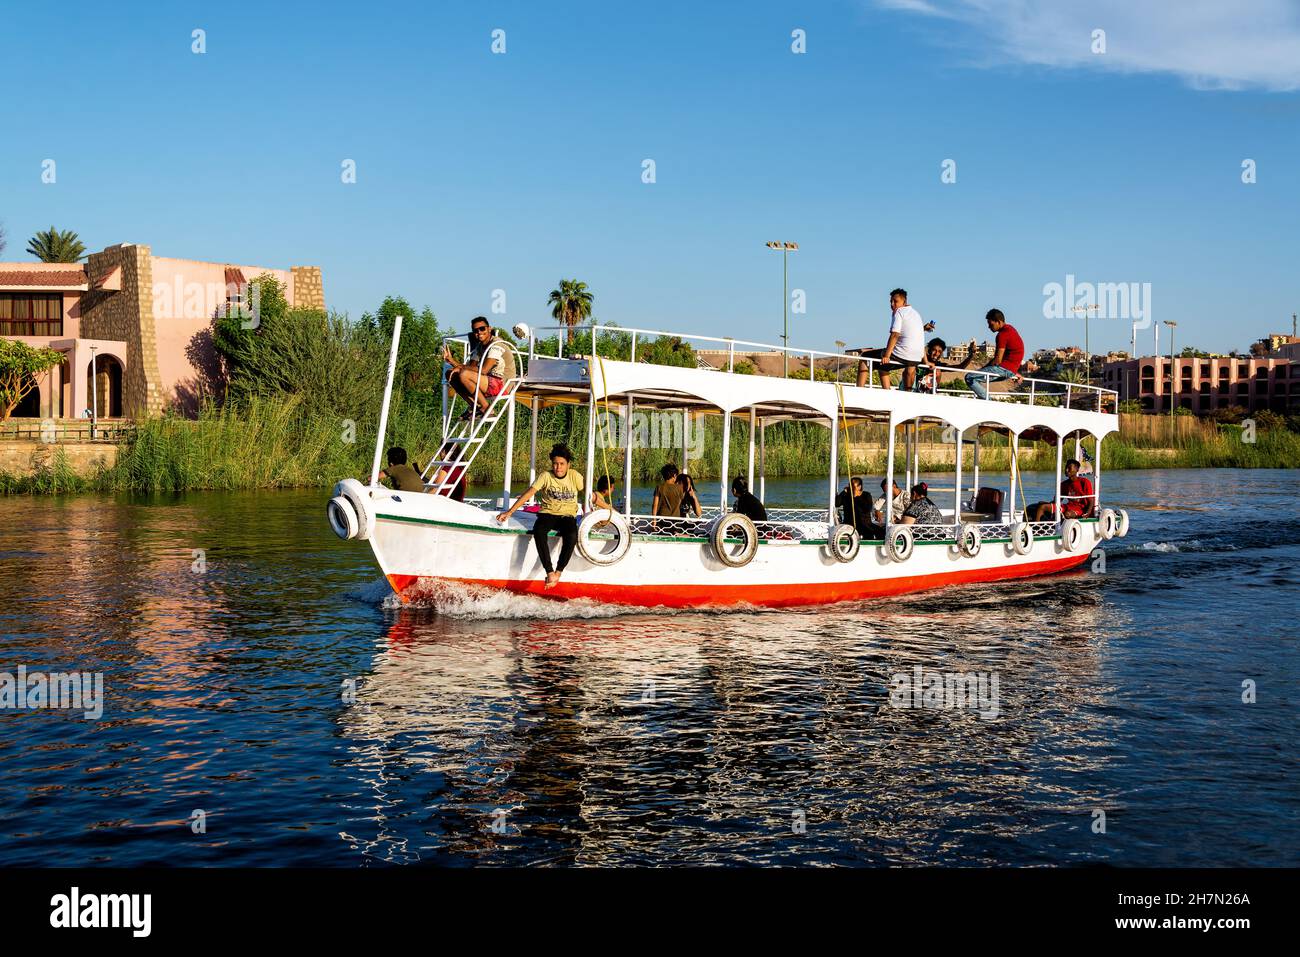 ASWAN, EGIPTO - 30 DE JULIO de 2021: Barco lleno de pasajeros en el río Nilo en Aswan, Egipto el 30 de julio de 2021 Foto de stock